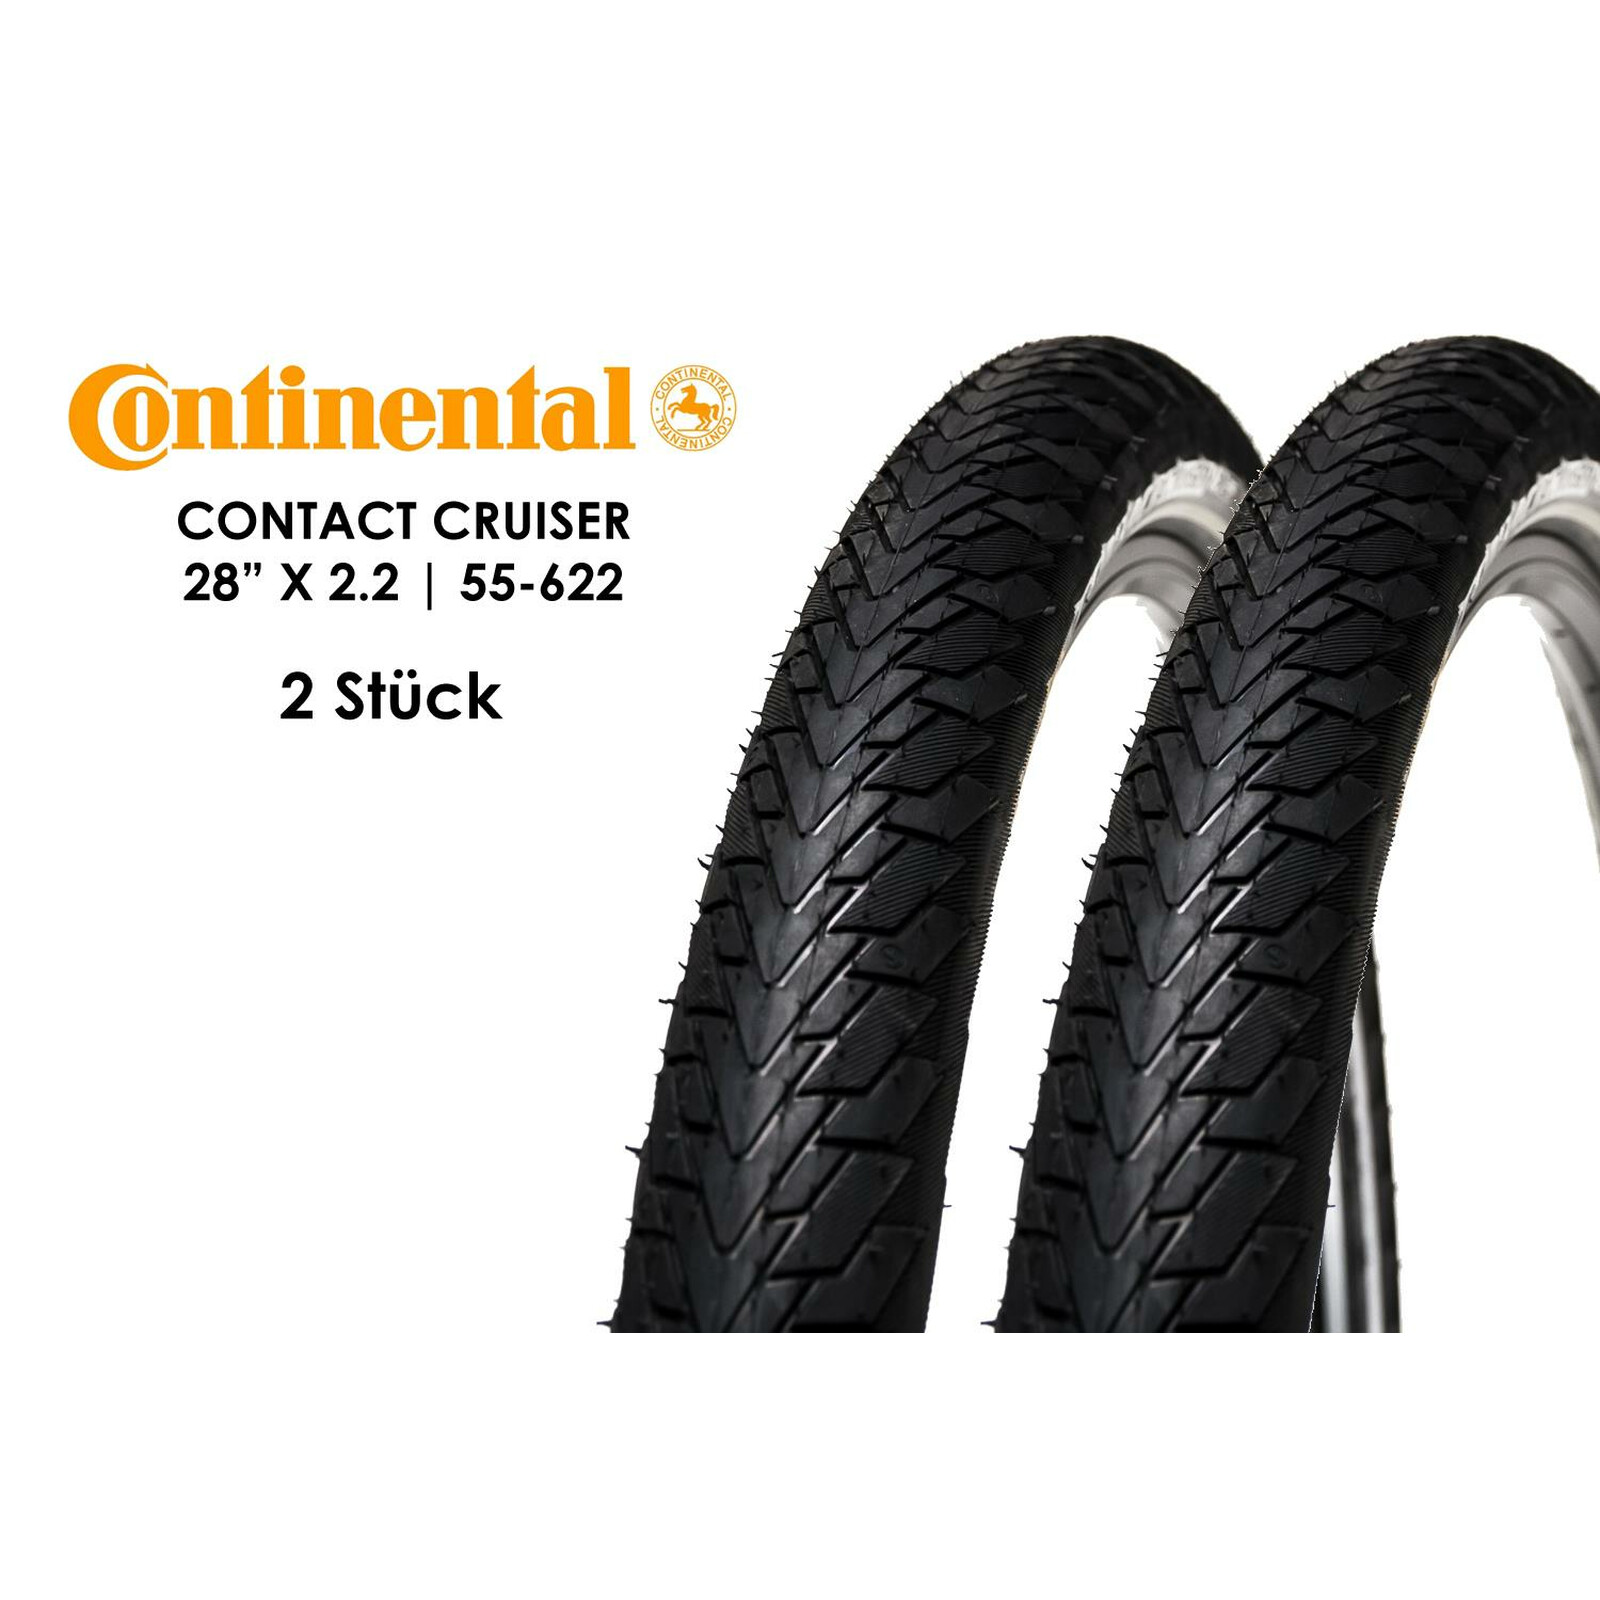 2 Stück 28 Zoll Continental CONTACT Cruiser Fahrrad Reifen